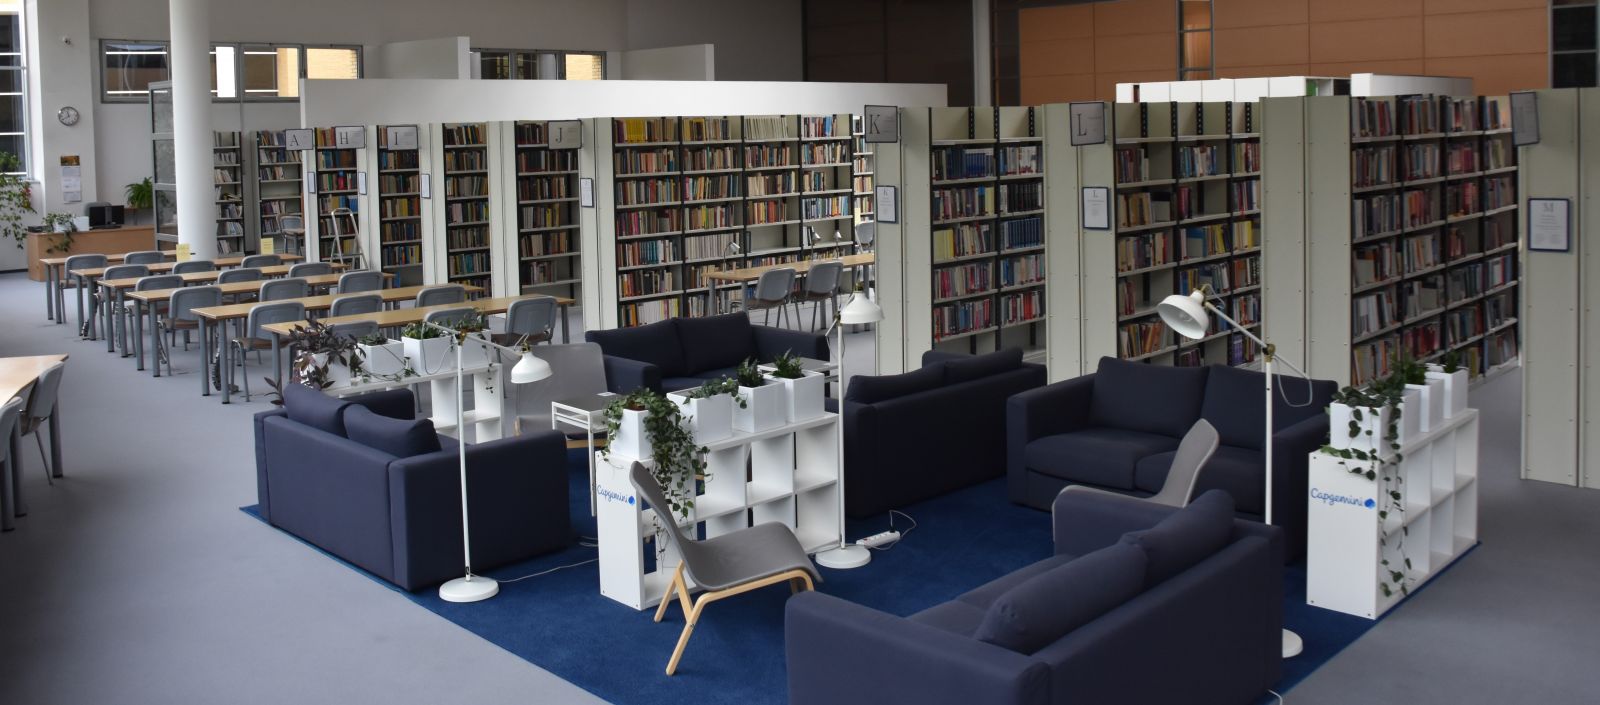 Zdjęcie wnętrza biblioteki z widokiem na regały i kanapy